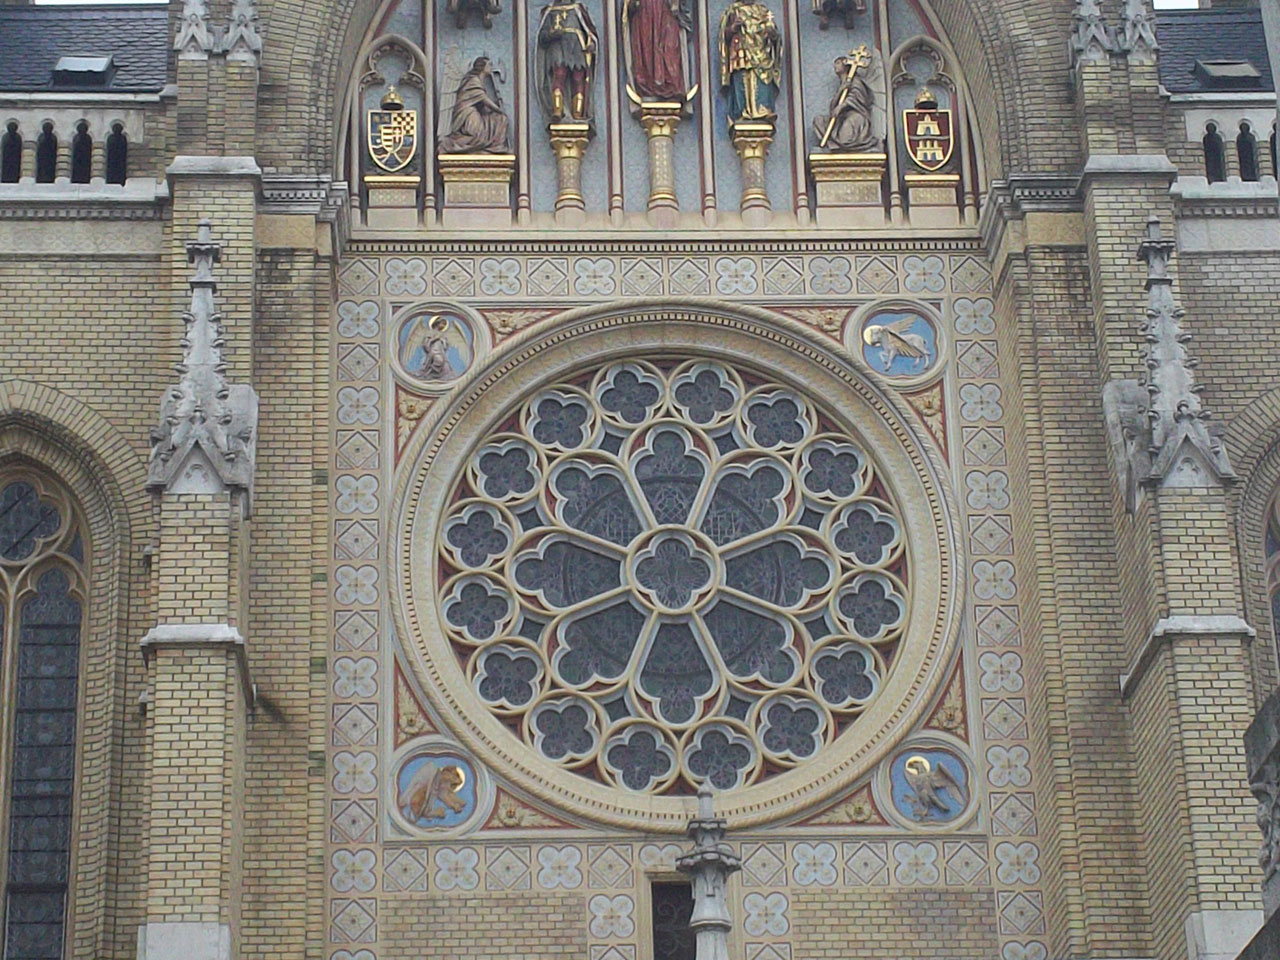 Slika prikazuje rozetu na crkvi.